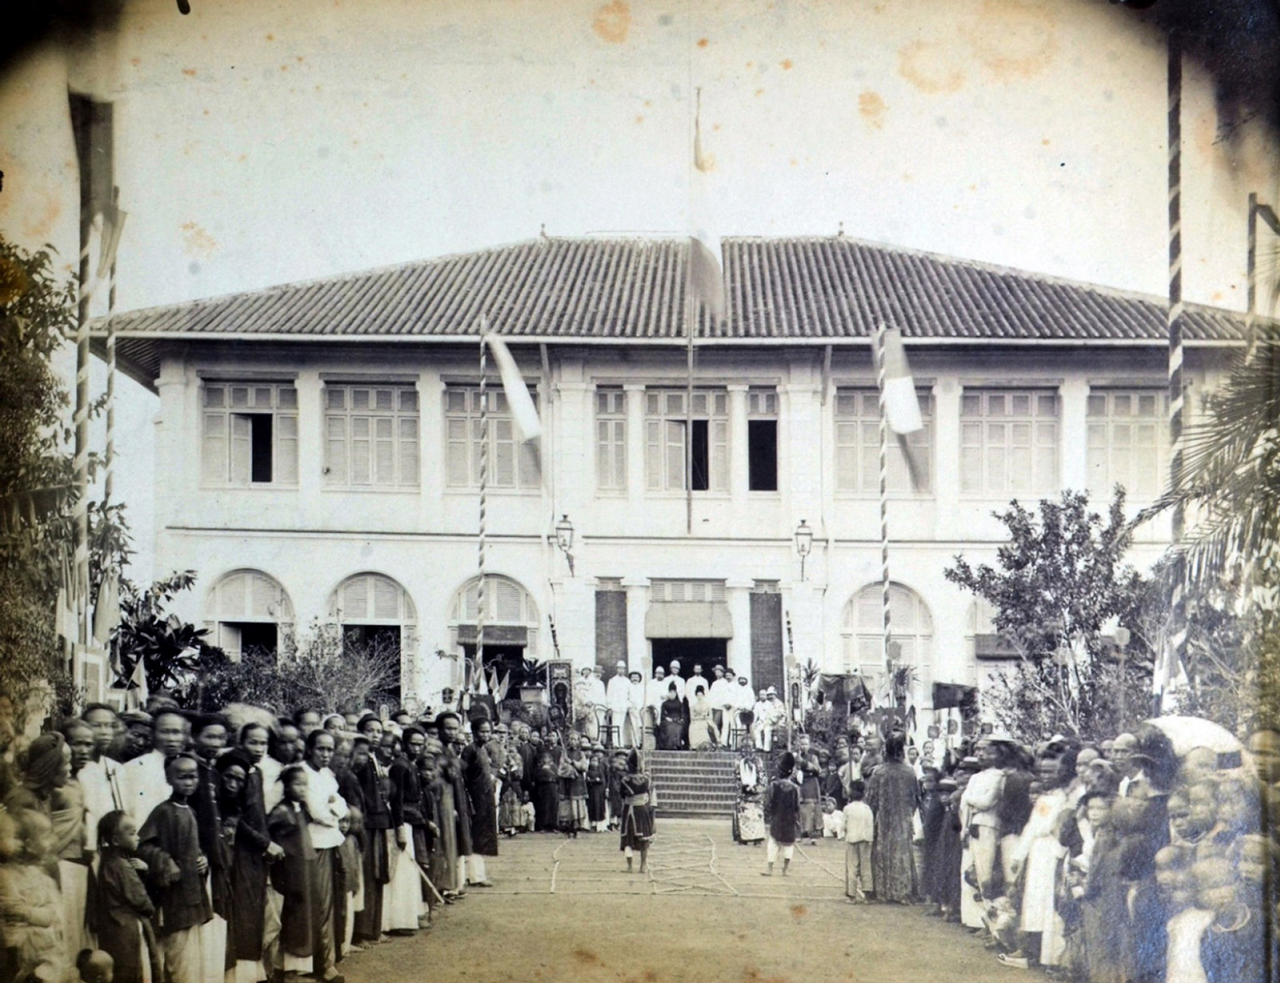 Xem thi đấu cờ người năm 1890 ở Vĩnh Long